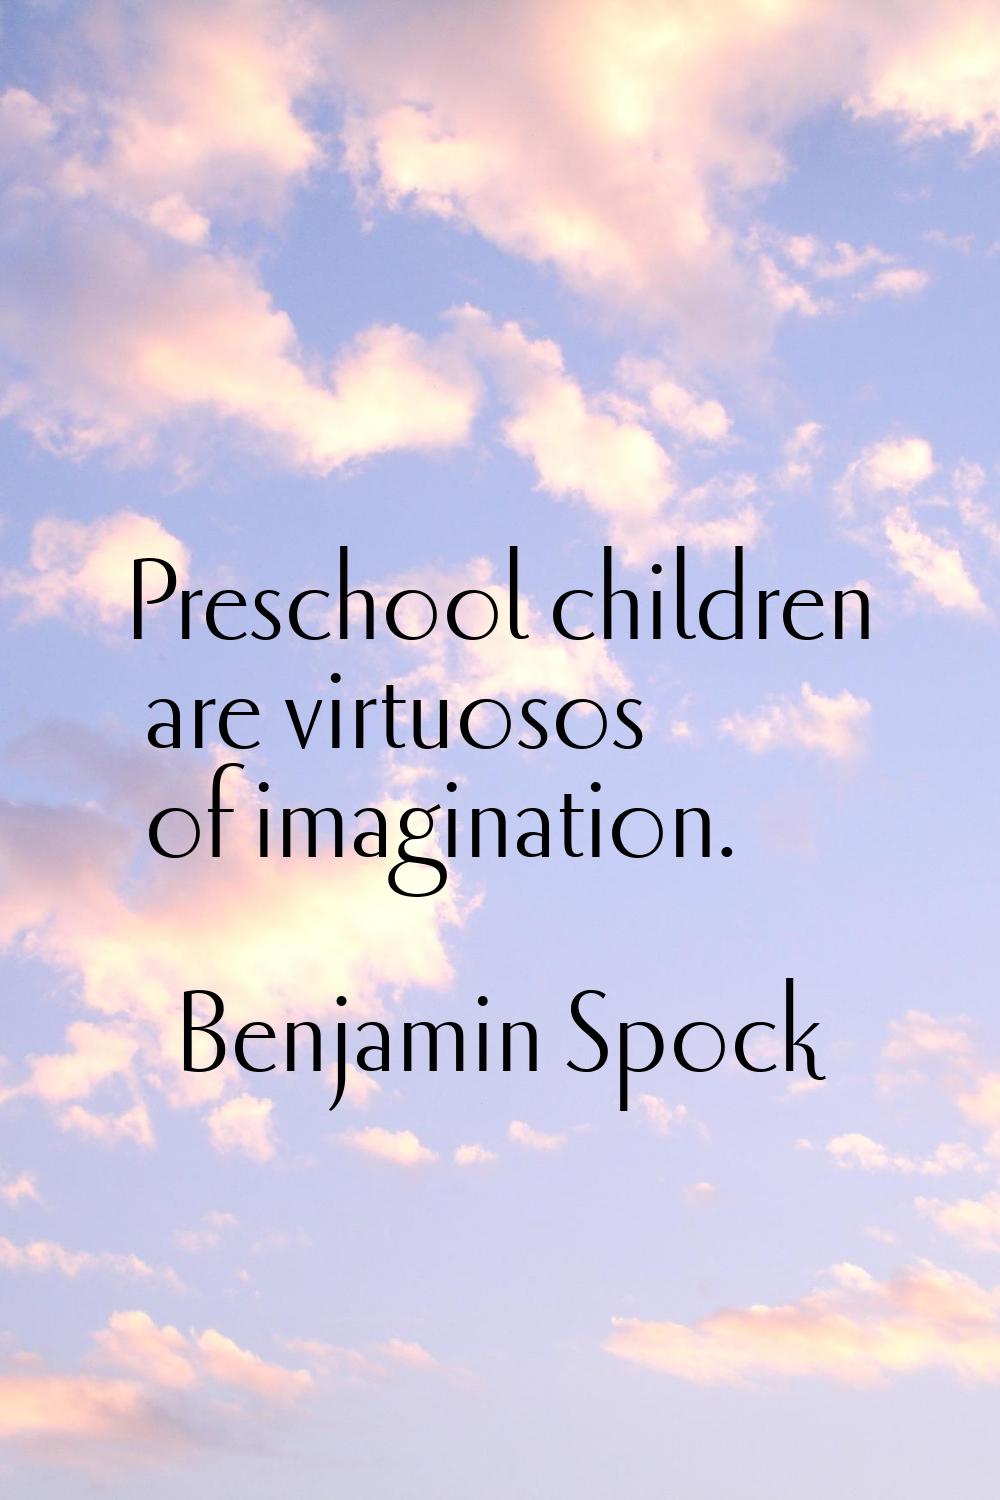 Preschool children are virtuosos of imagination.